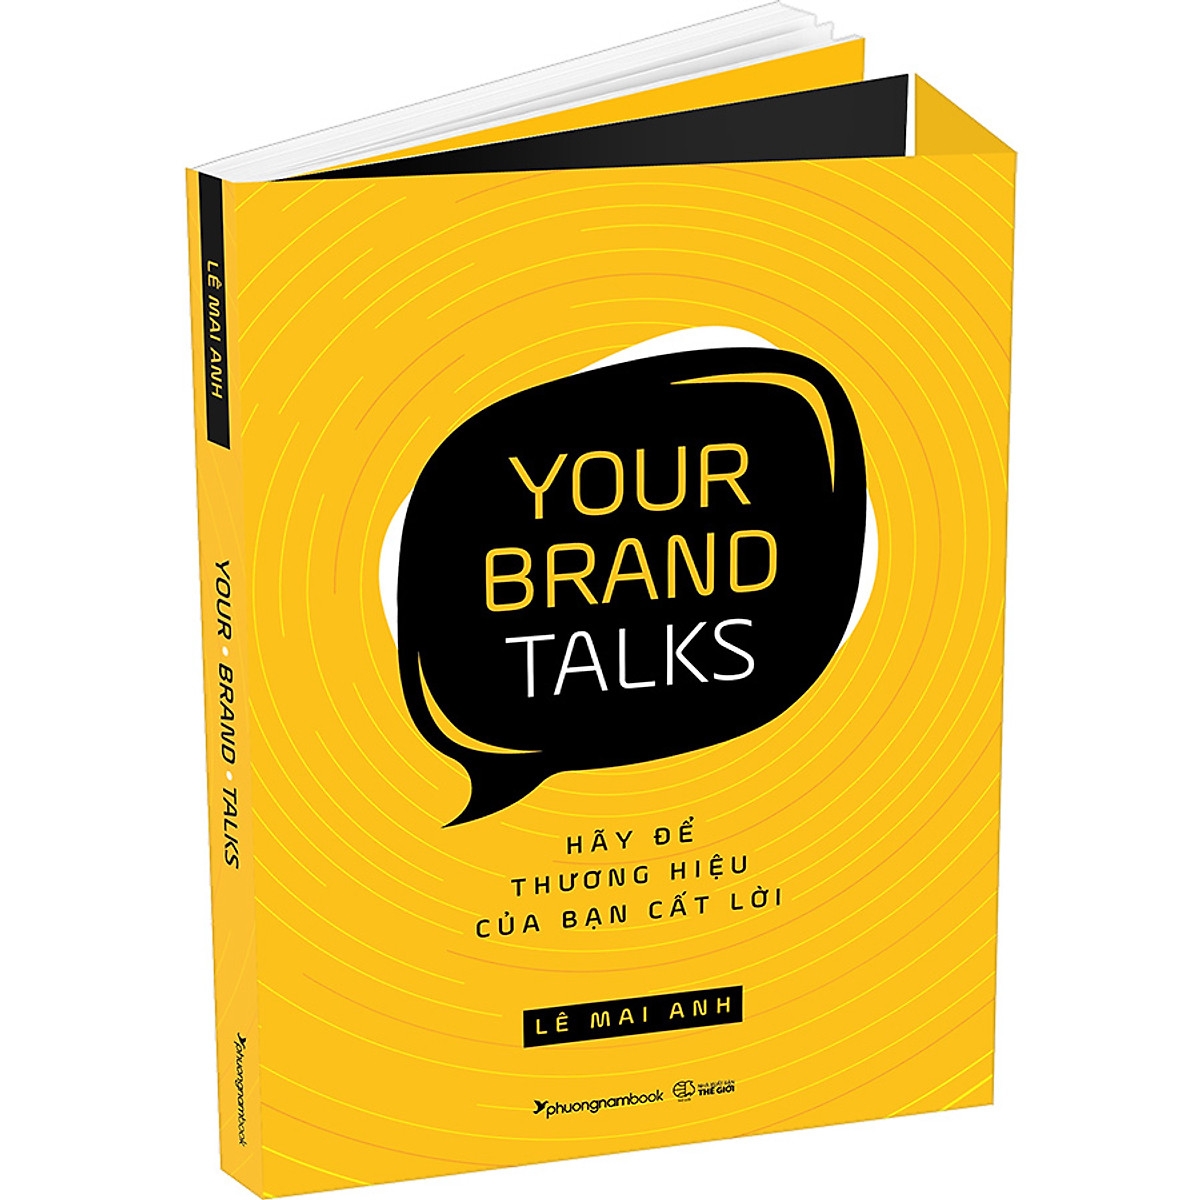 Your Brand Talks - Hãy Để Thương Hiệu Của Bạn Cất Lời PDF